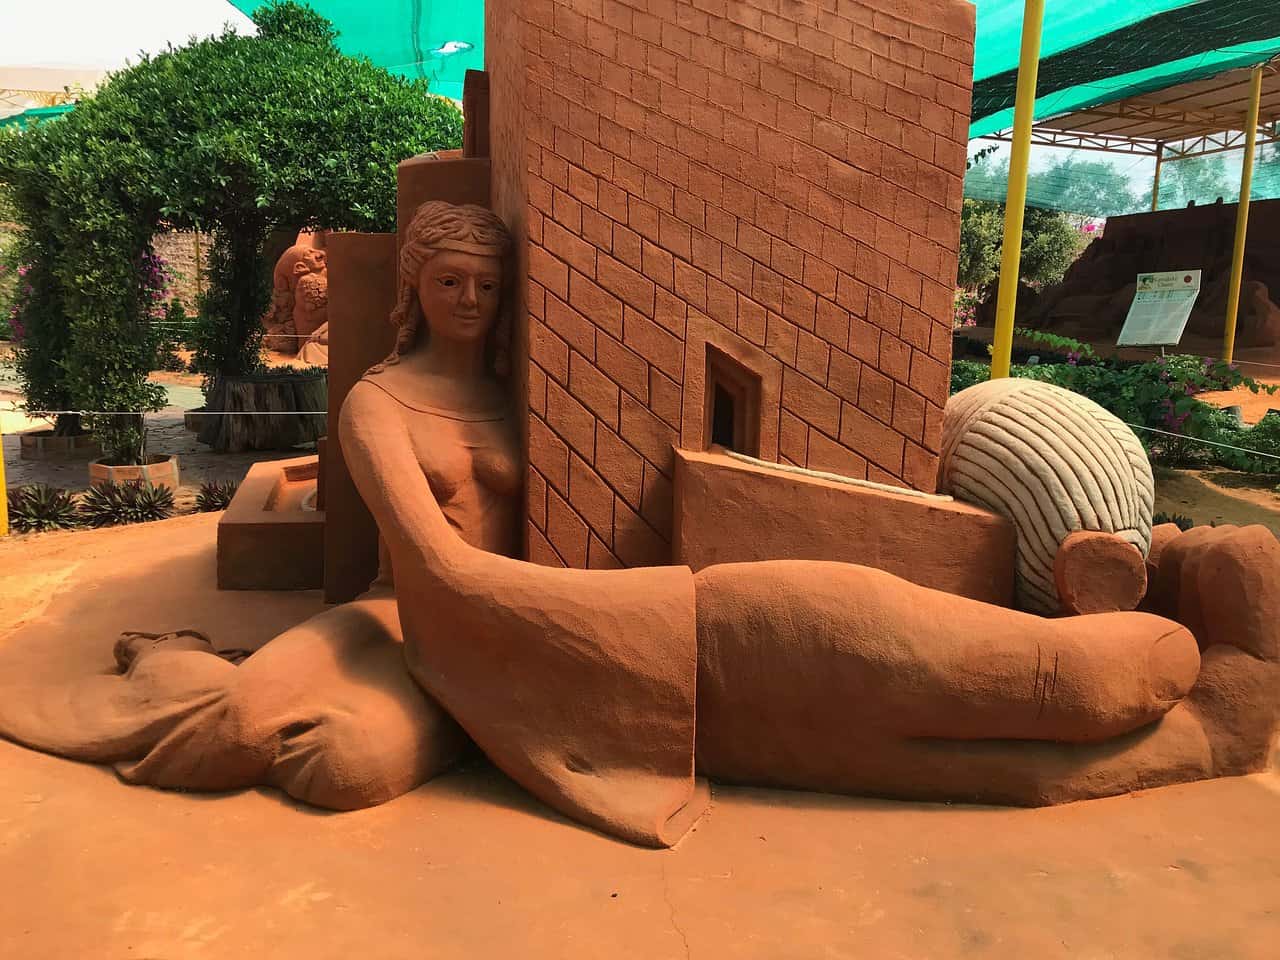 Sand Sculpture Park: the Hidden Gem of Phan Thiet